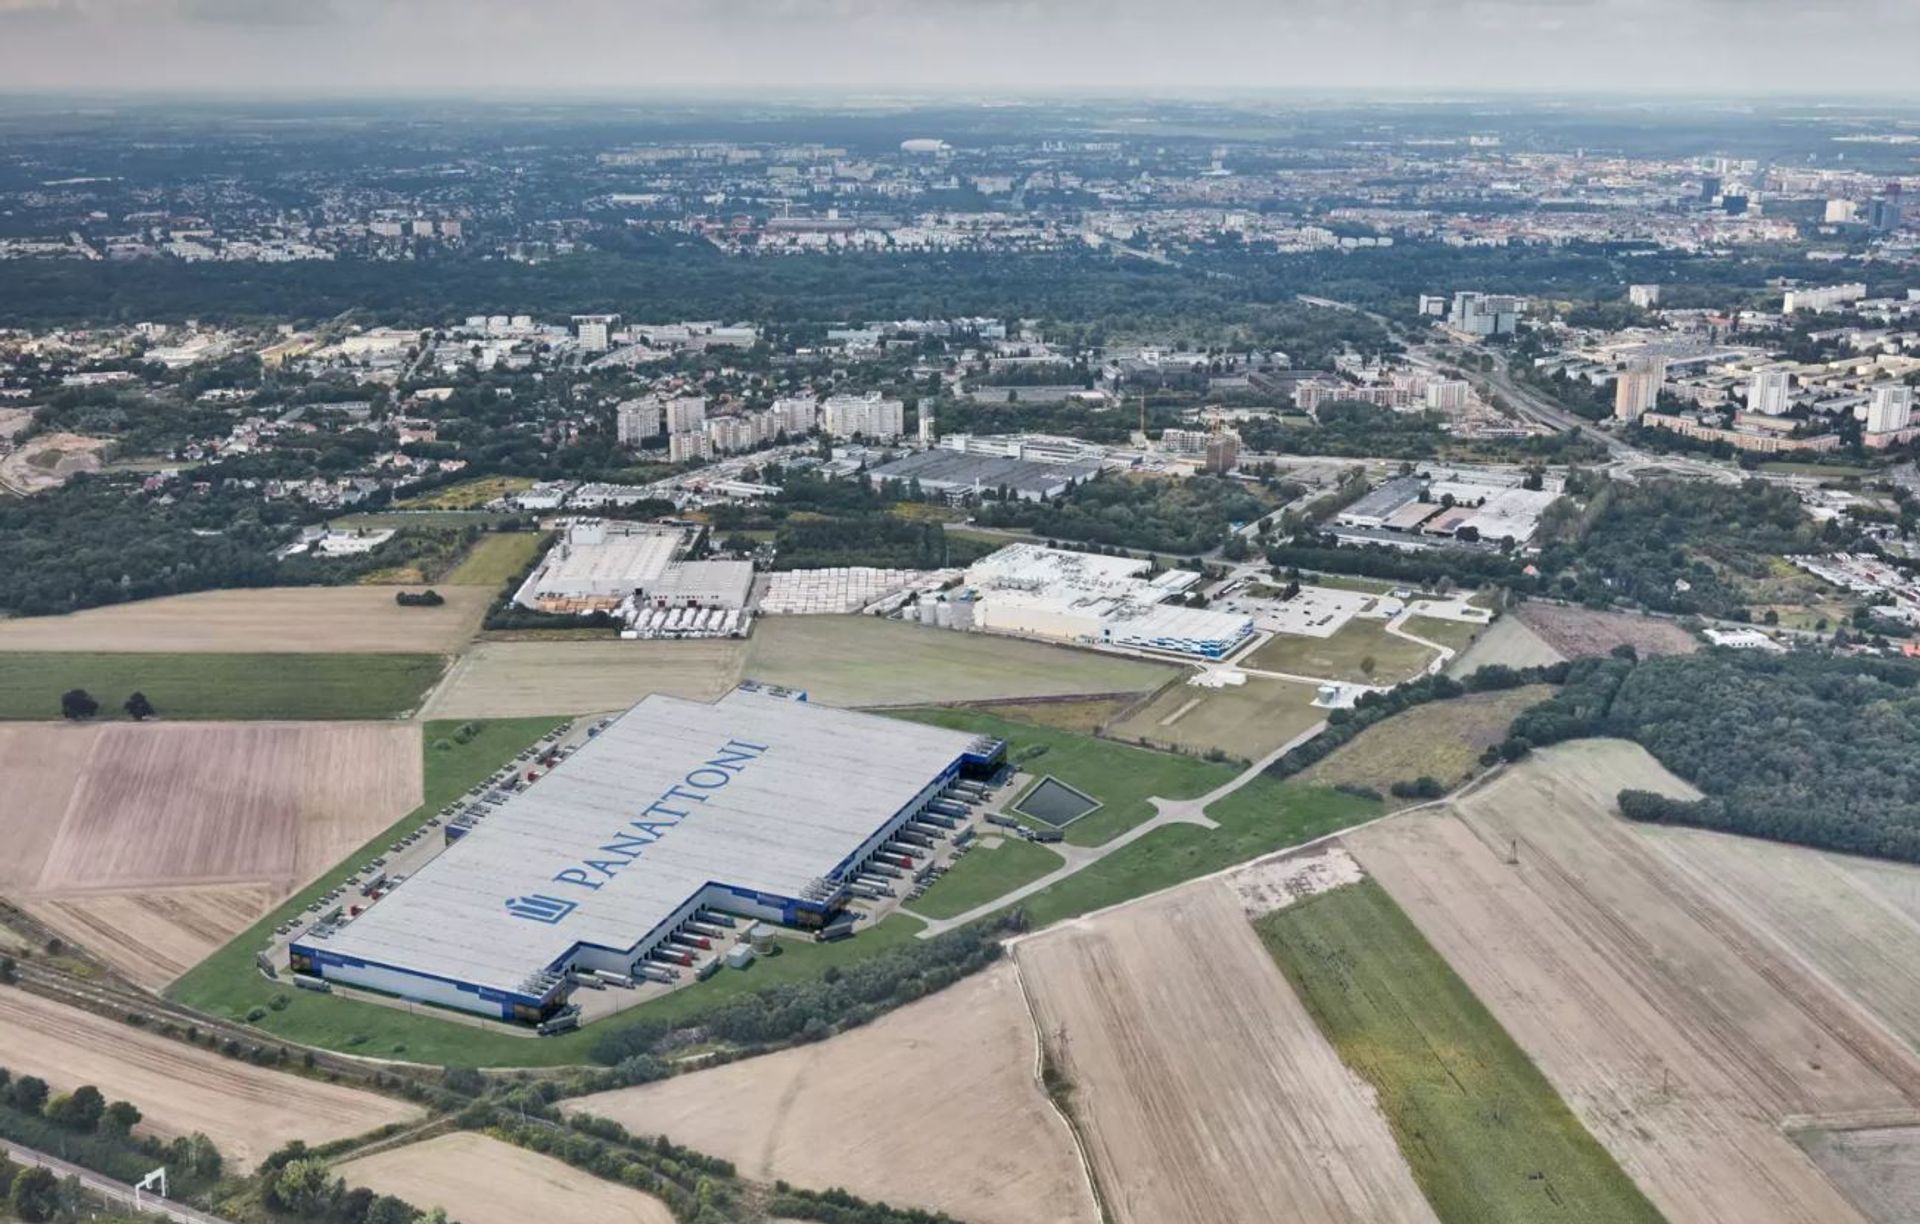 Panattoni rusza w Poznaniu z budową największego parku City Logistics w Polsce